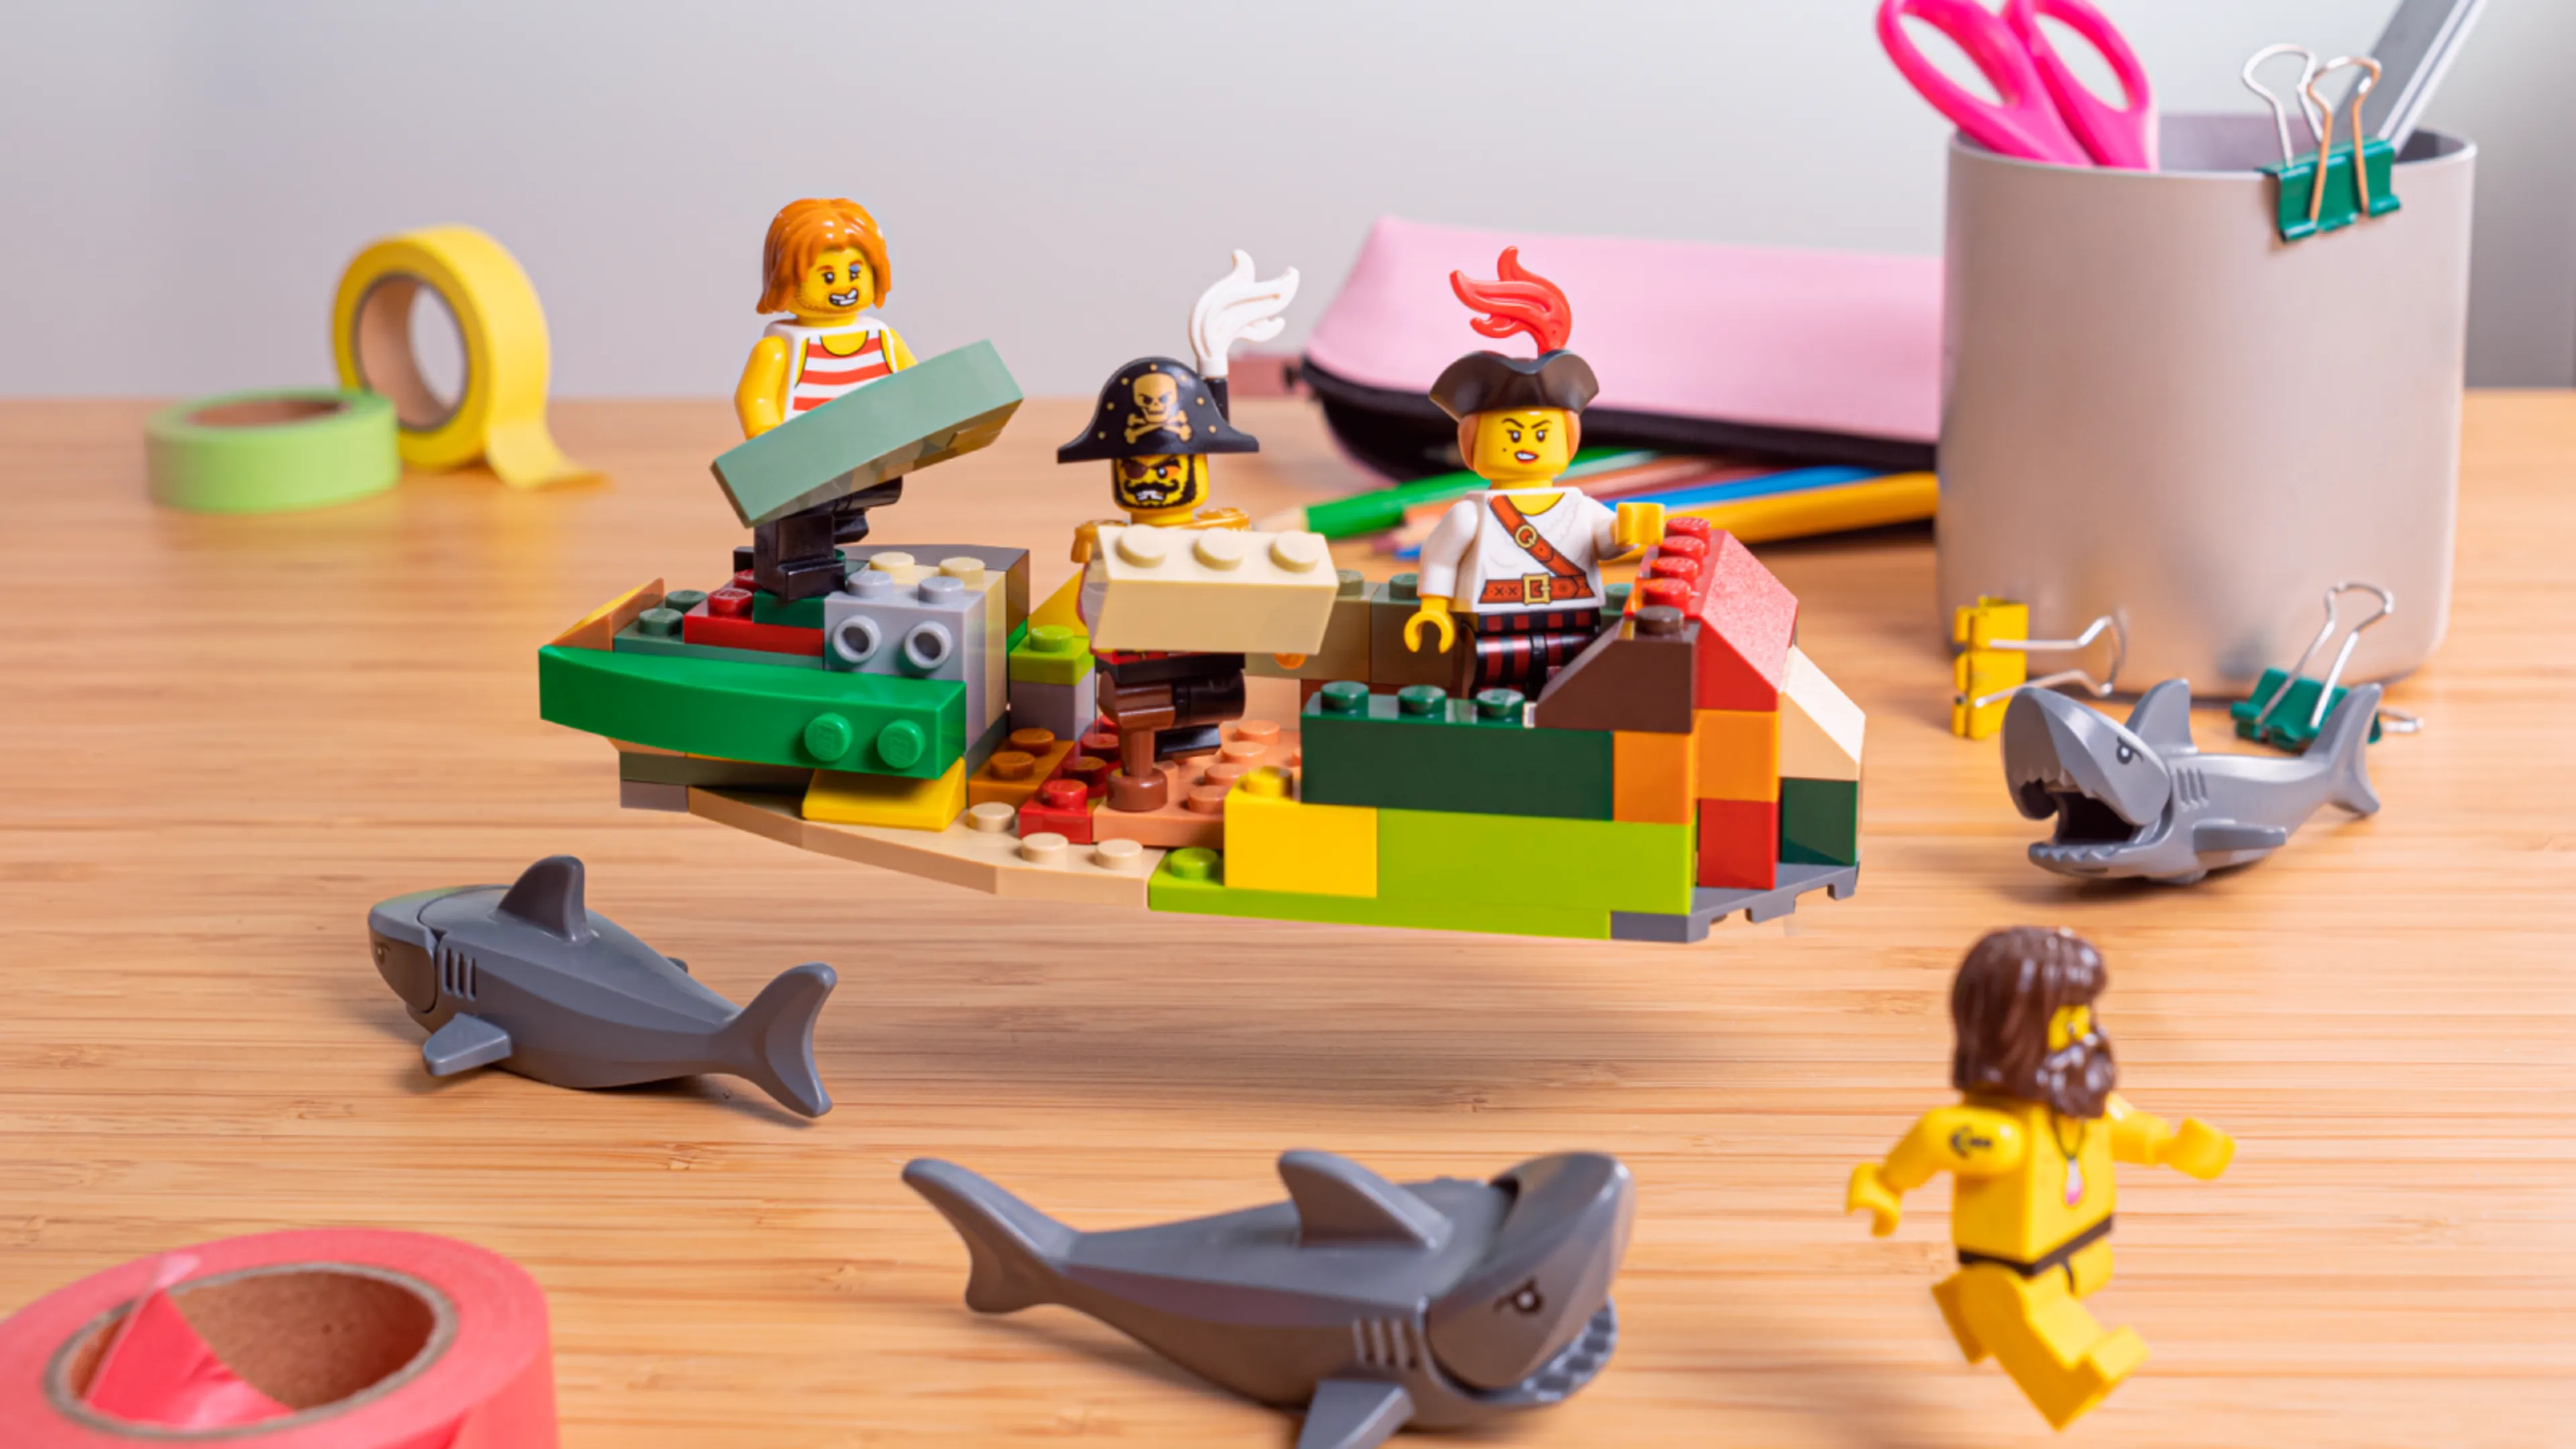 Minifigurines construisant les flancs du bateau, entourées de requins